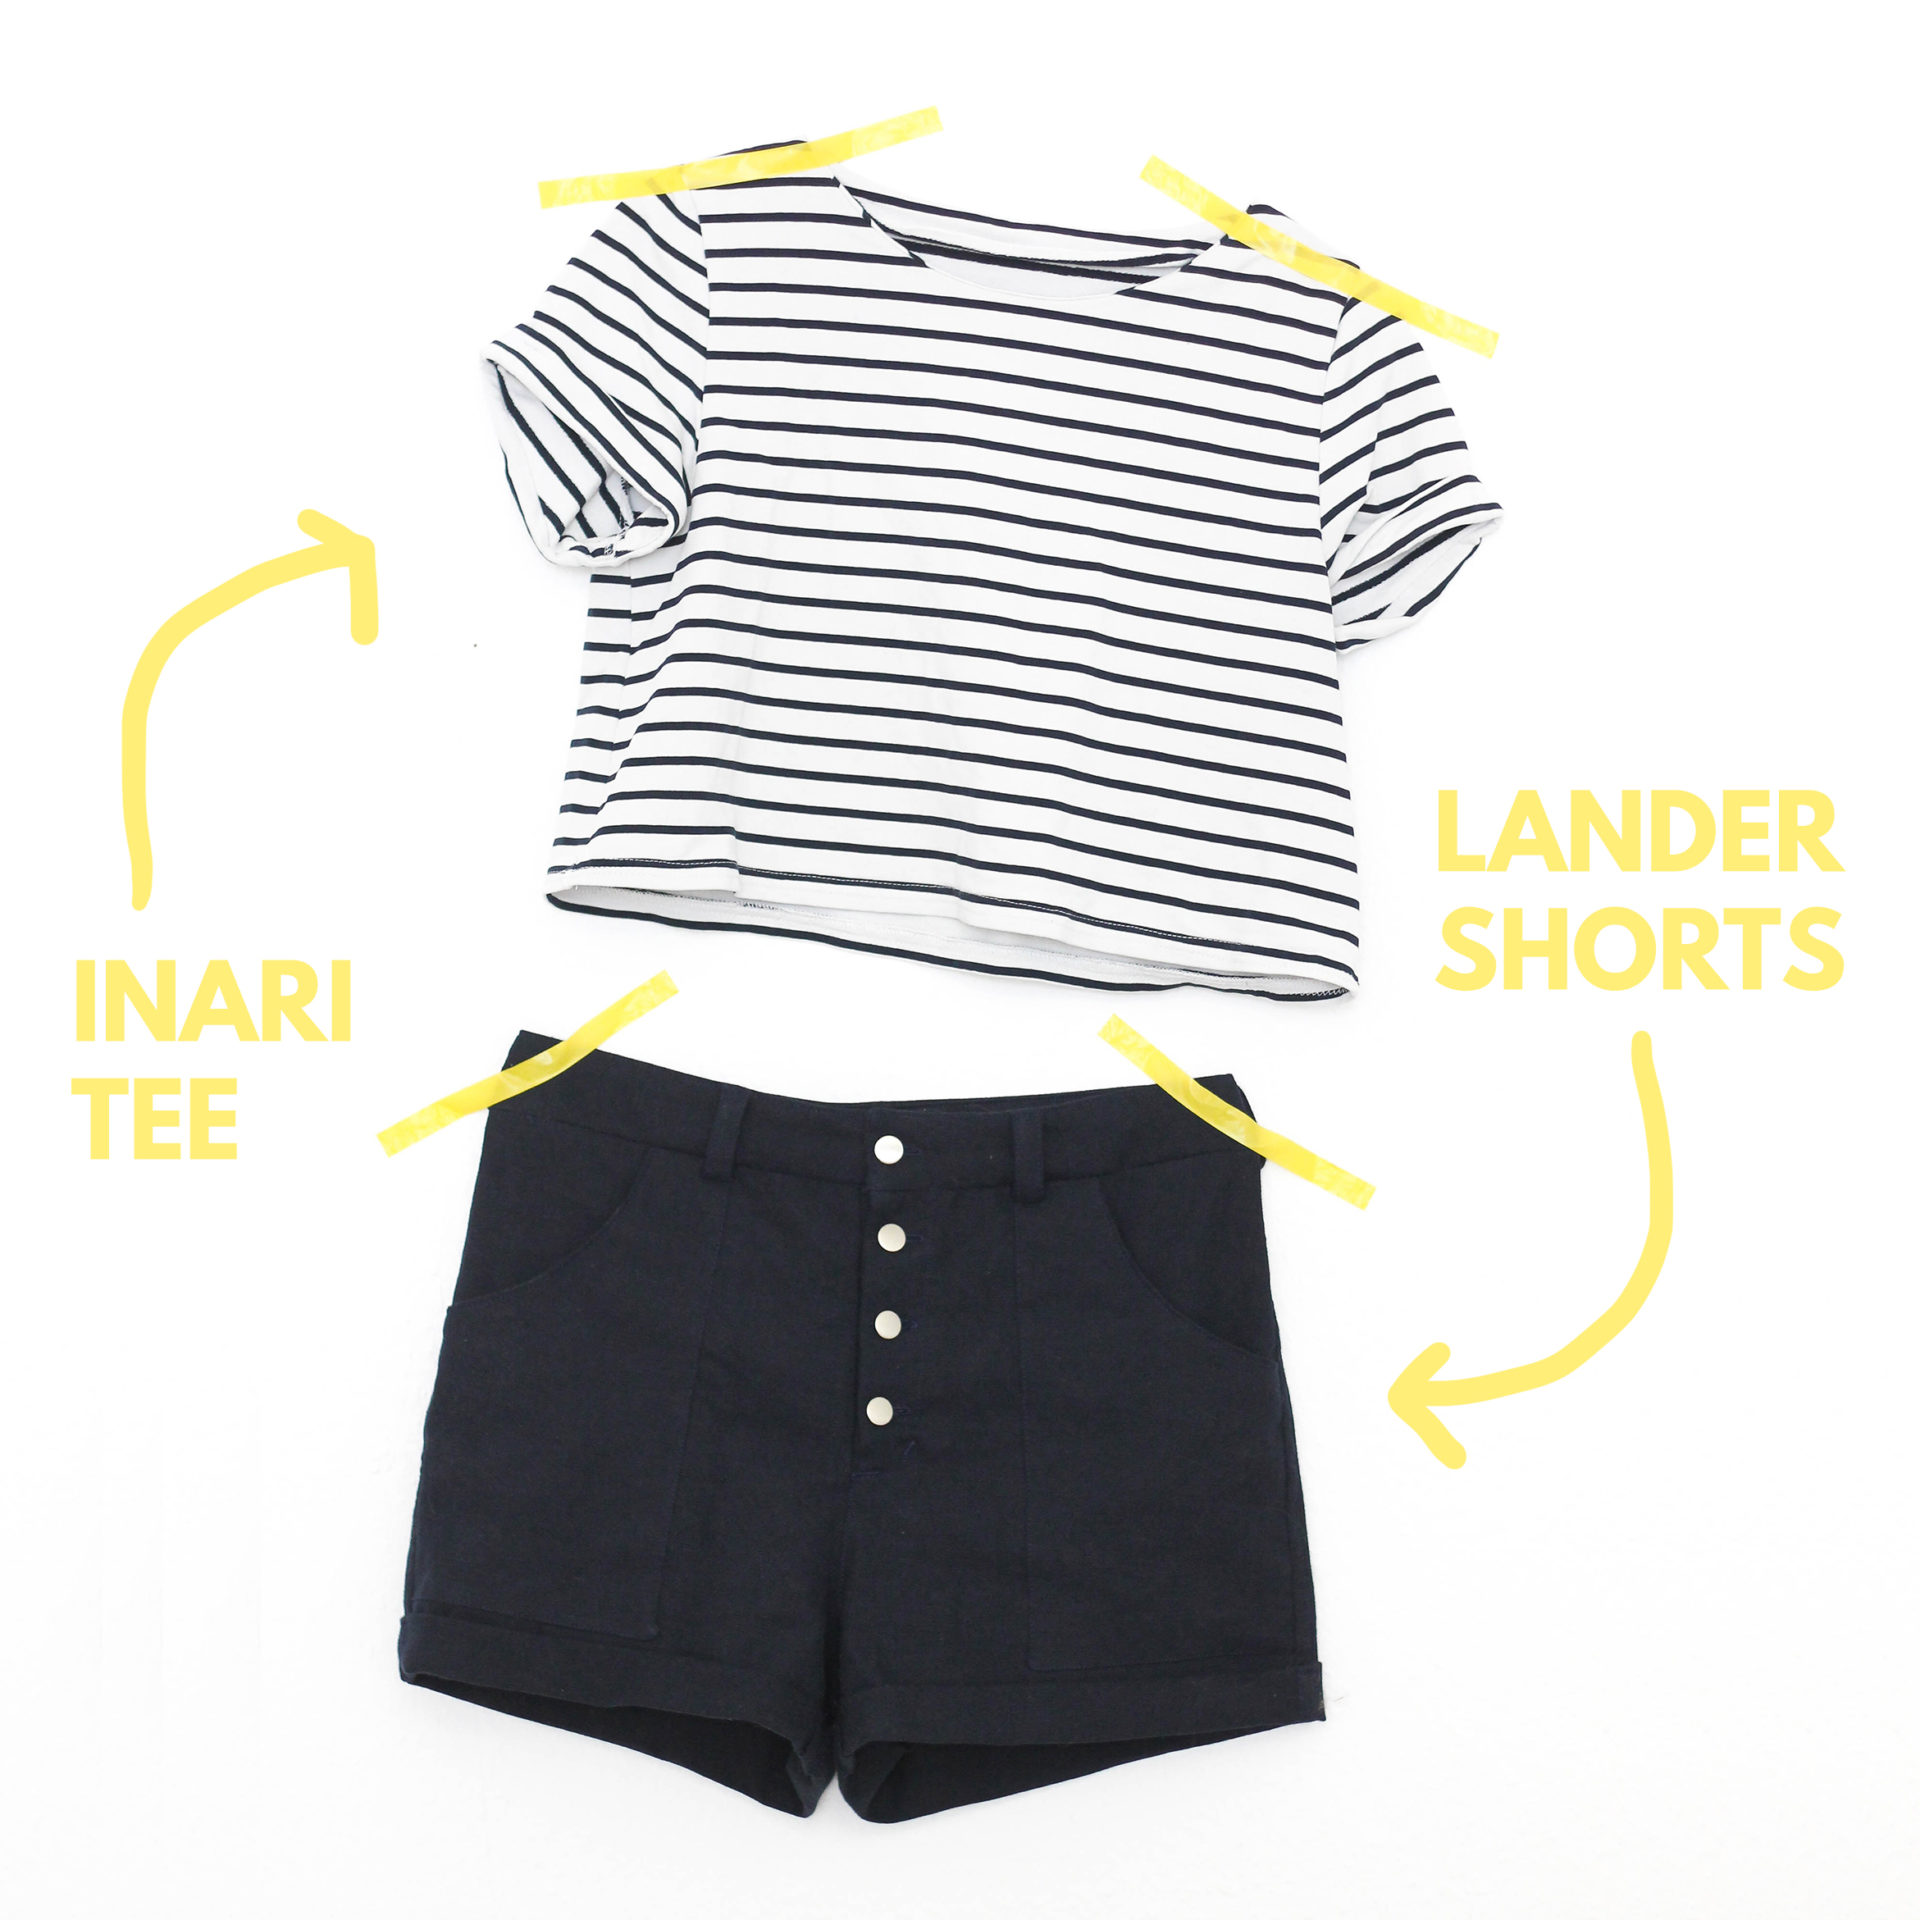 Lander Shorts